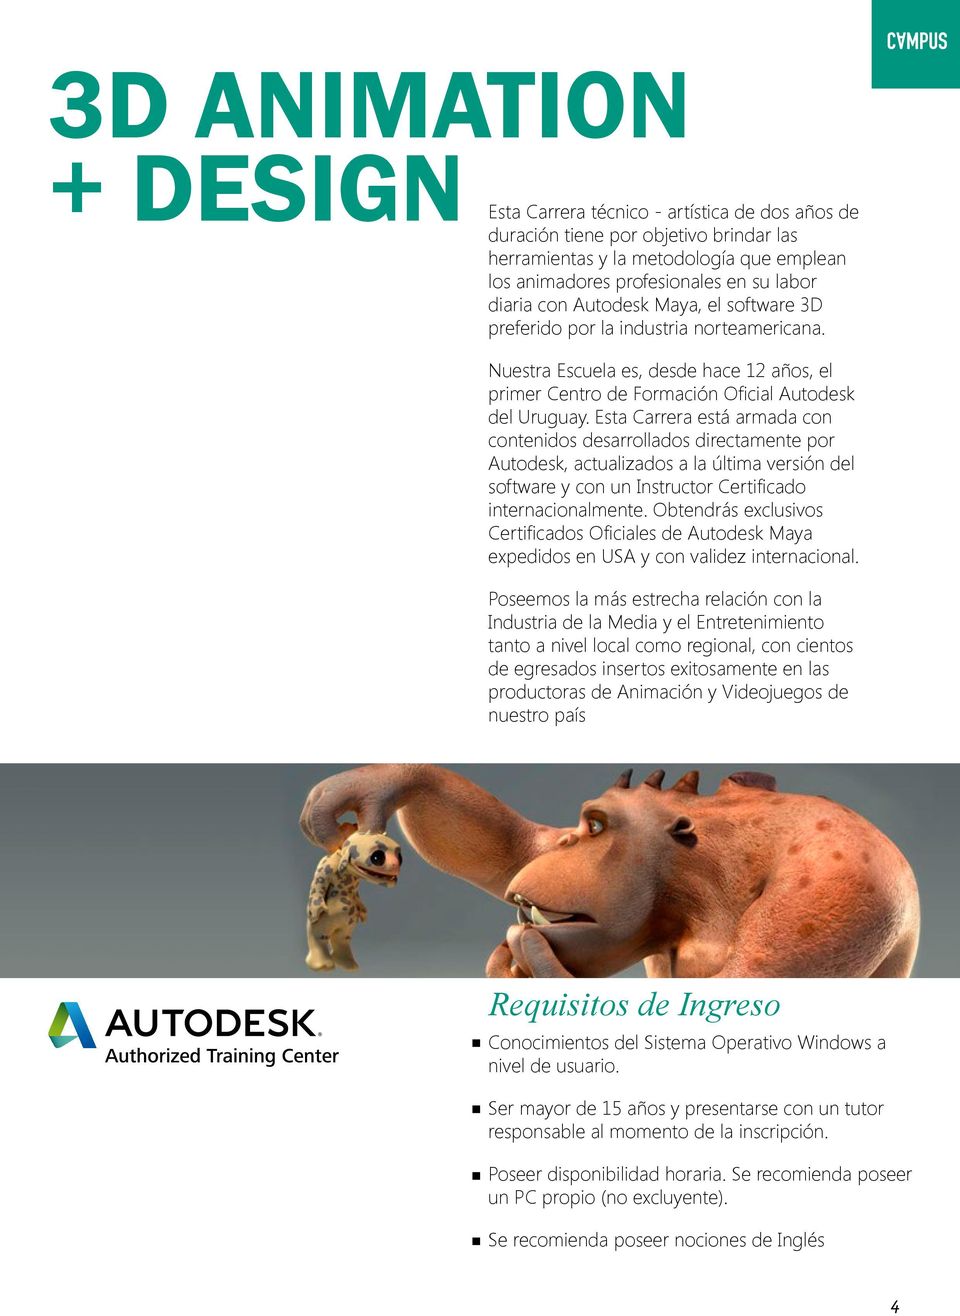 Esta Carrera está armada con contenidos desarrollados directamente por Autodesk, actualizados a la última versión del software y con un Instructor Certificado internacionalmente.